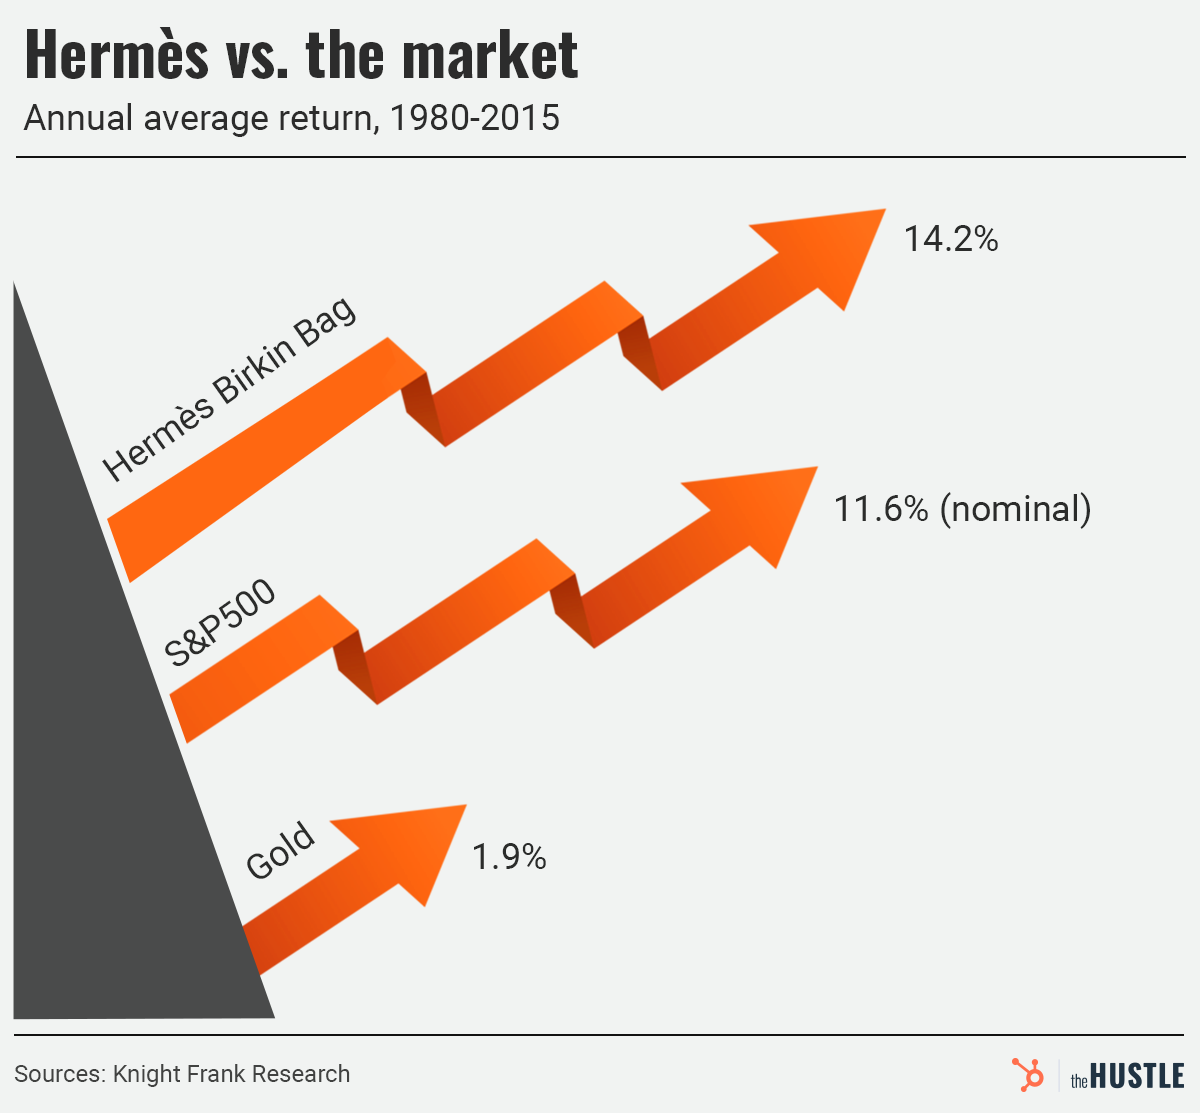 Hermès vs. the market, annual average return, 1980-2015